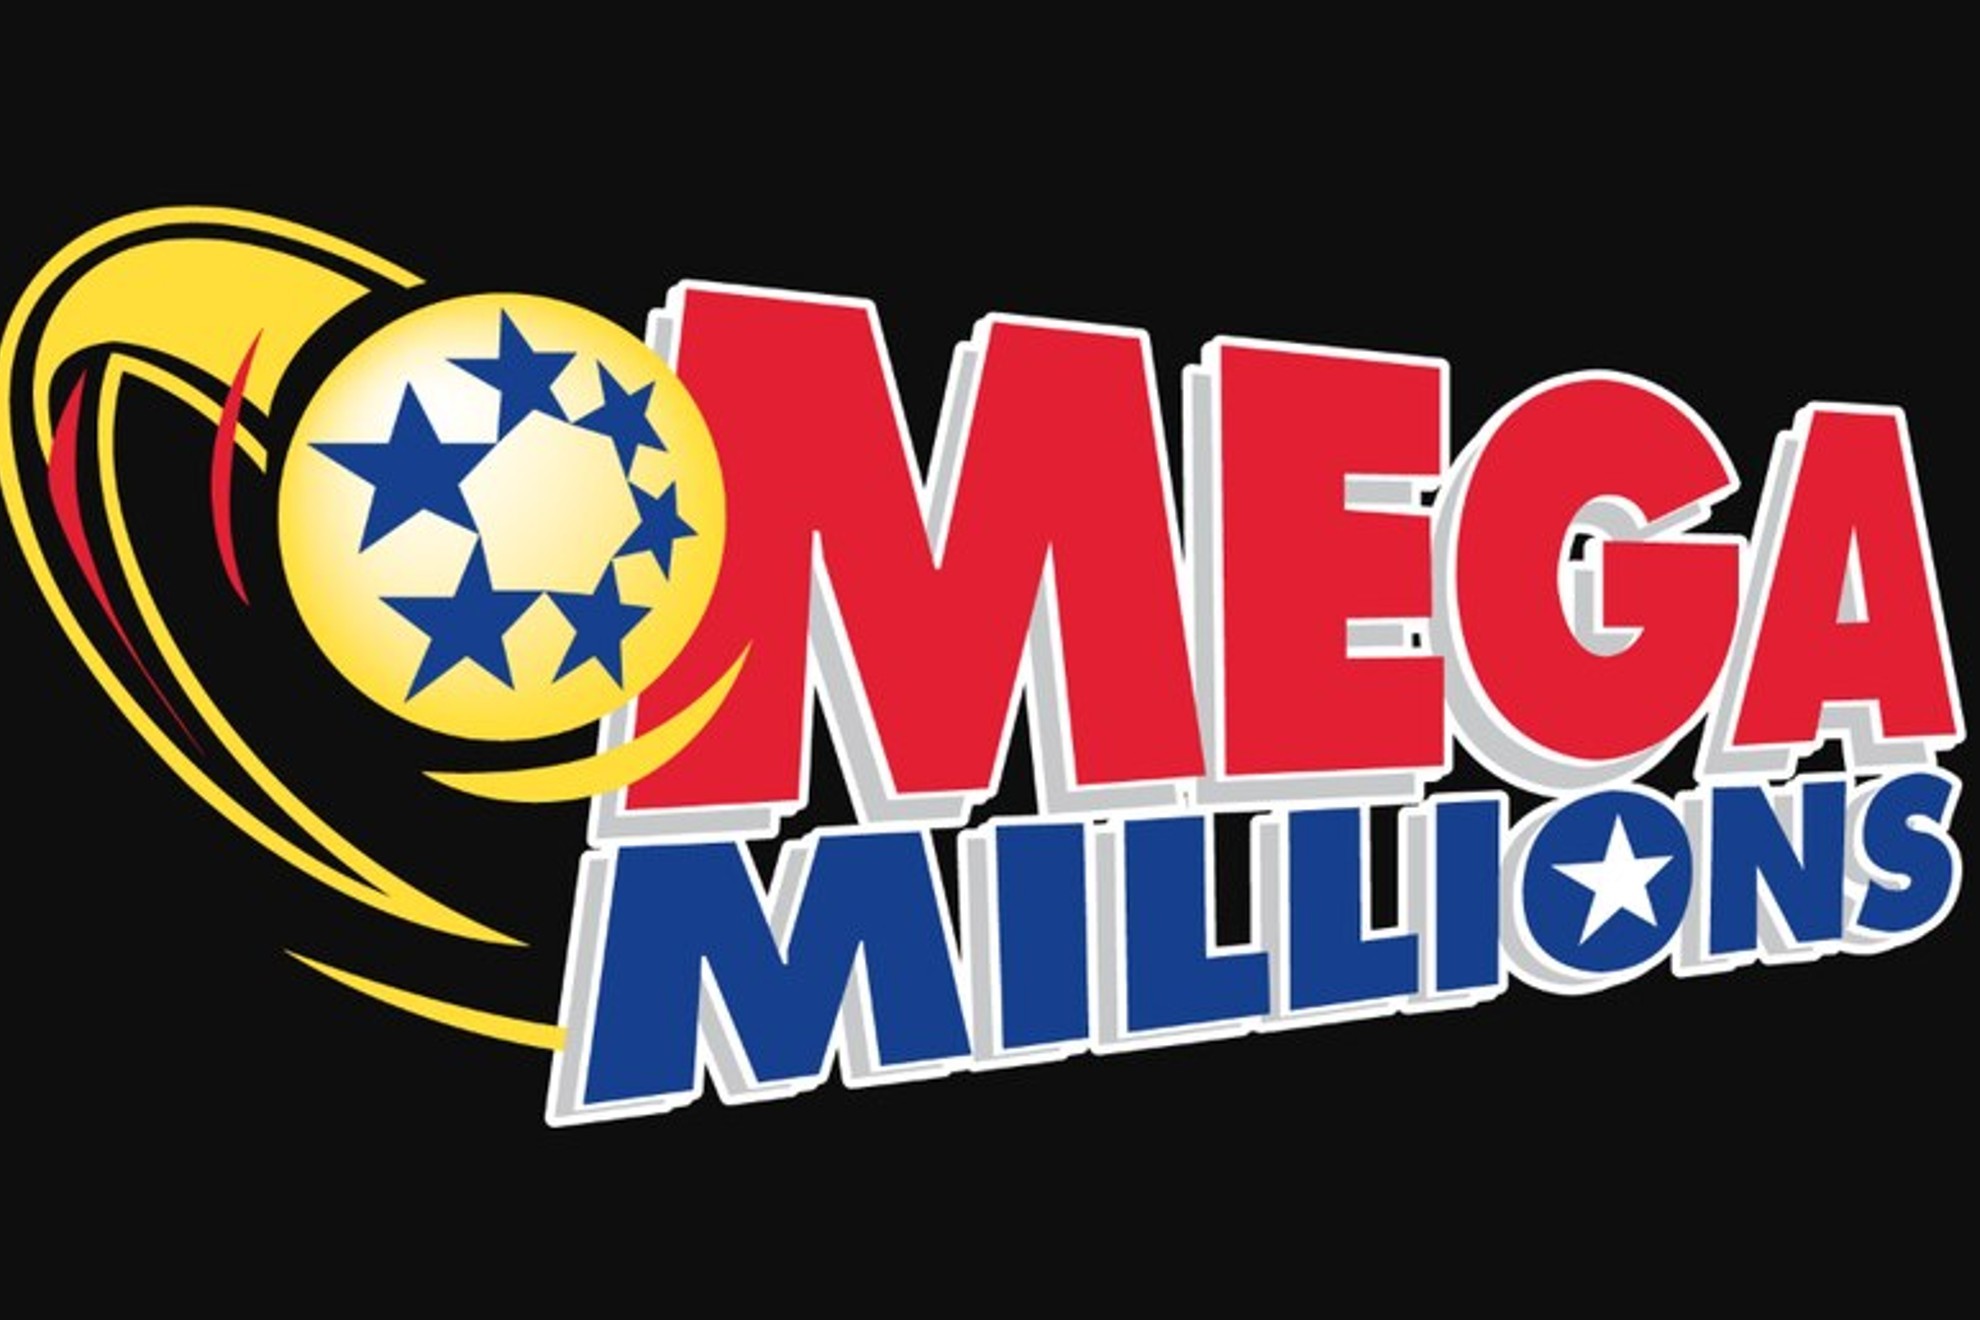 Mega Millions black logo.